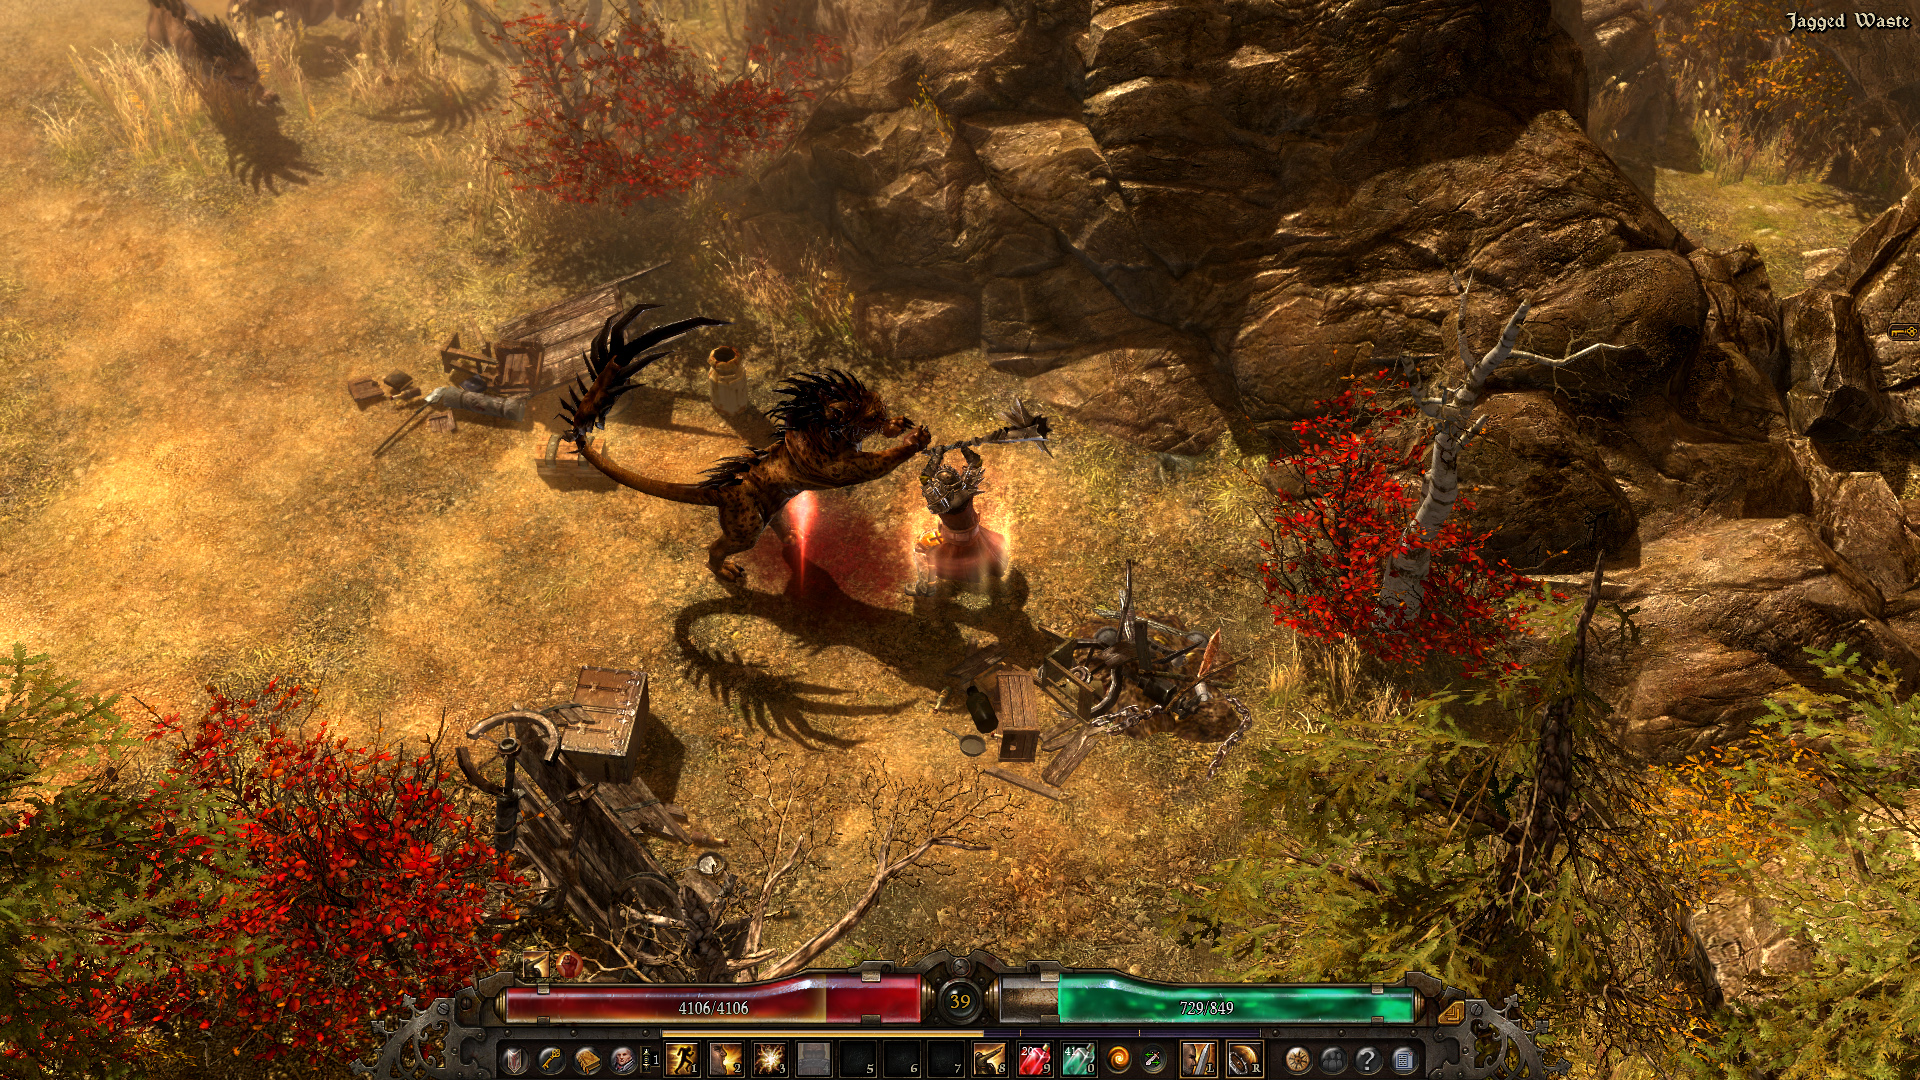 Chán nản với Diablo Immortal, game thủ chuyển sang chơi tựa game hậu duệ, phong cách không khác nhiều với Diablo bản gốc - Ảnh 2.